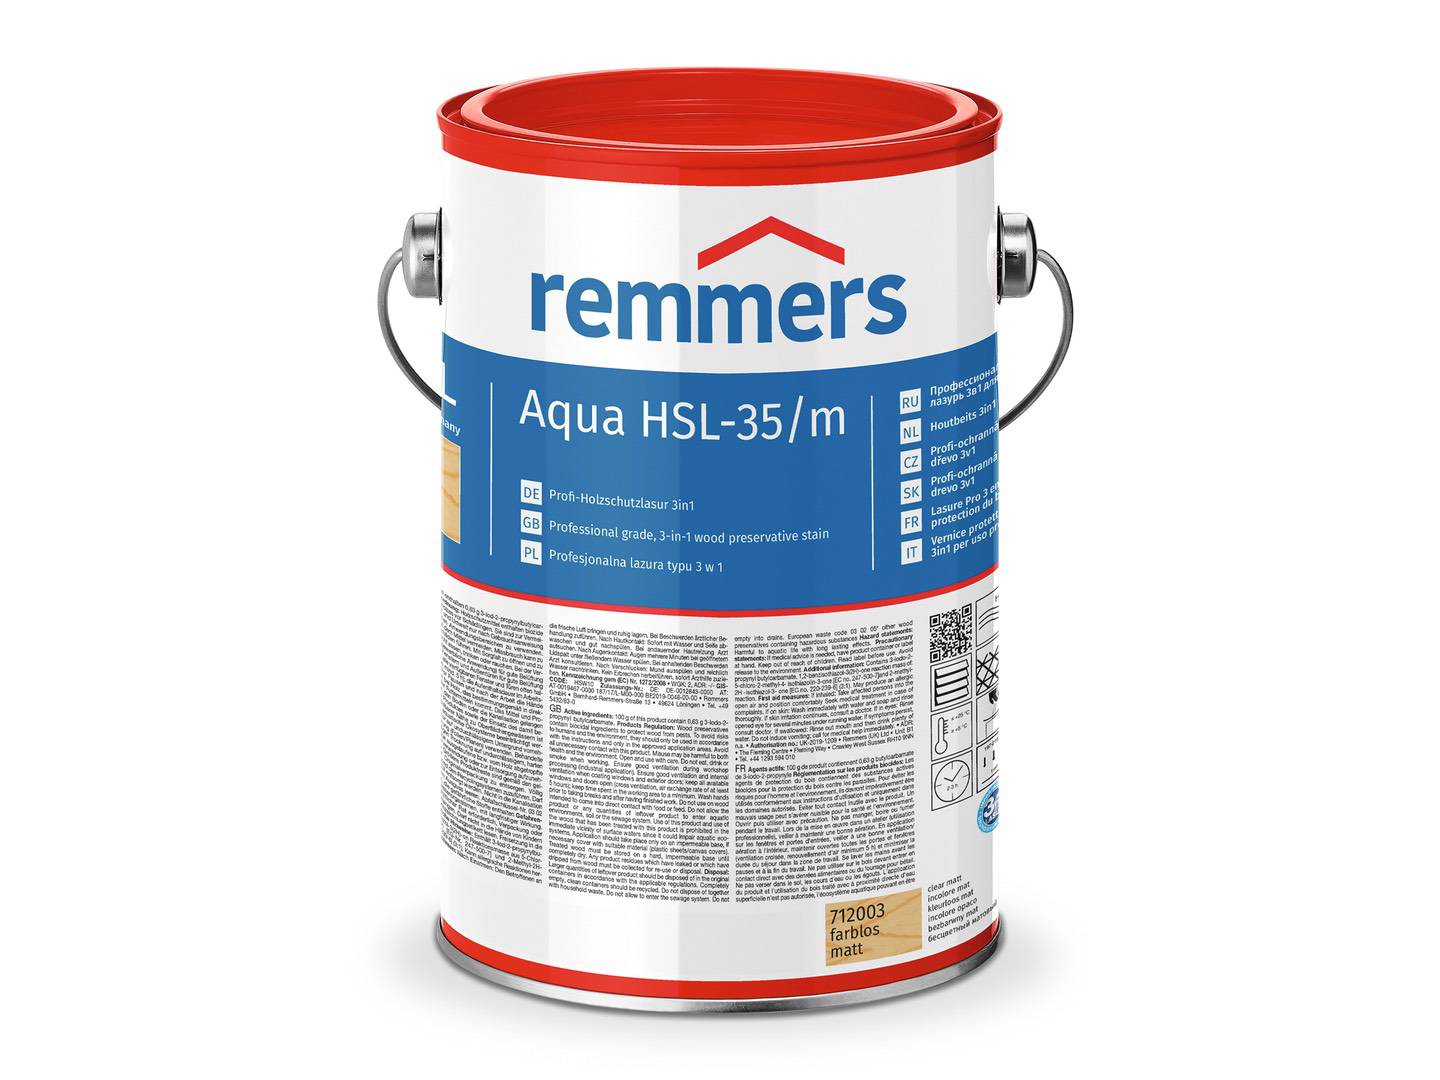 REMMERS Aqua HSL-35/m-Profi-Holzschutz-Lasur 3in1 palisander (RC-720) 5 l